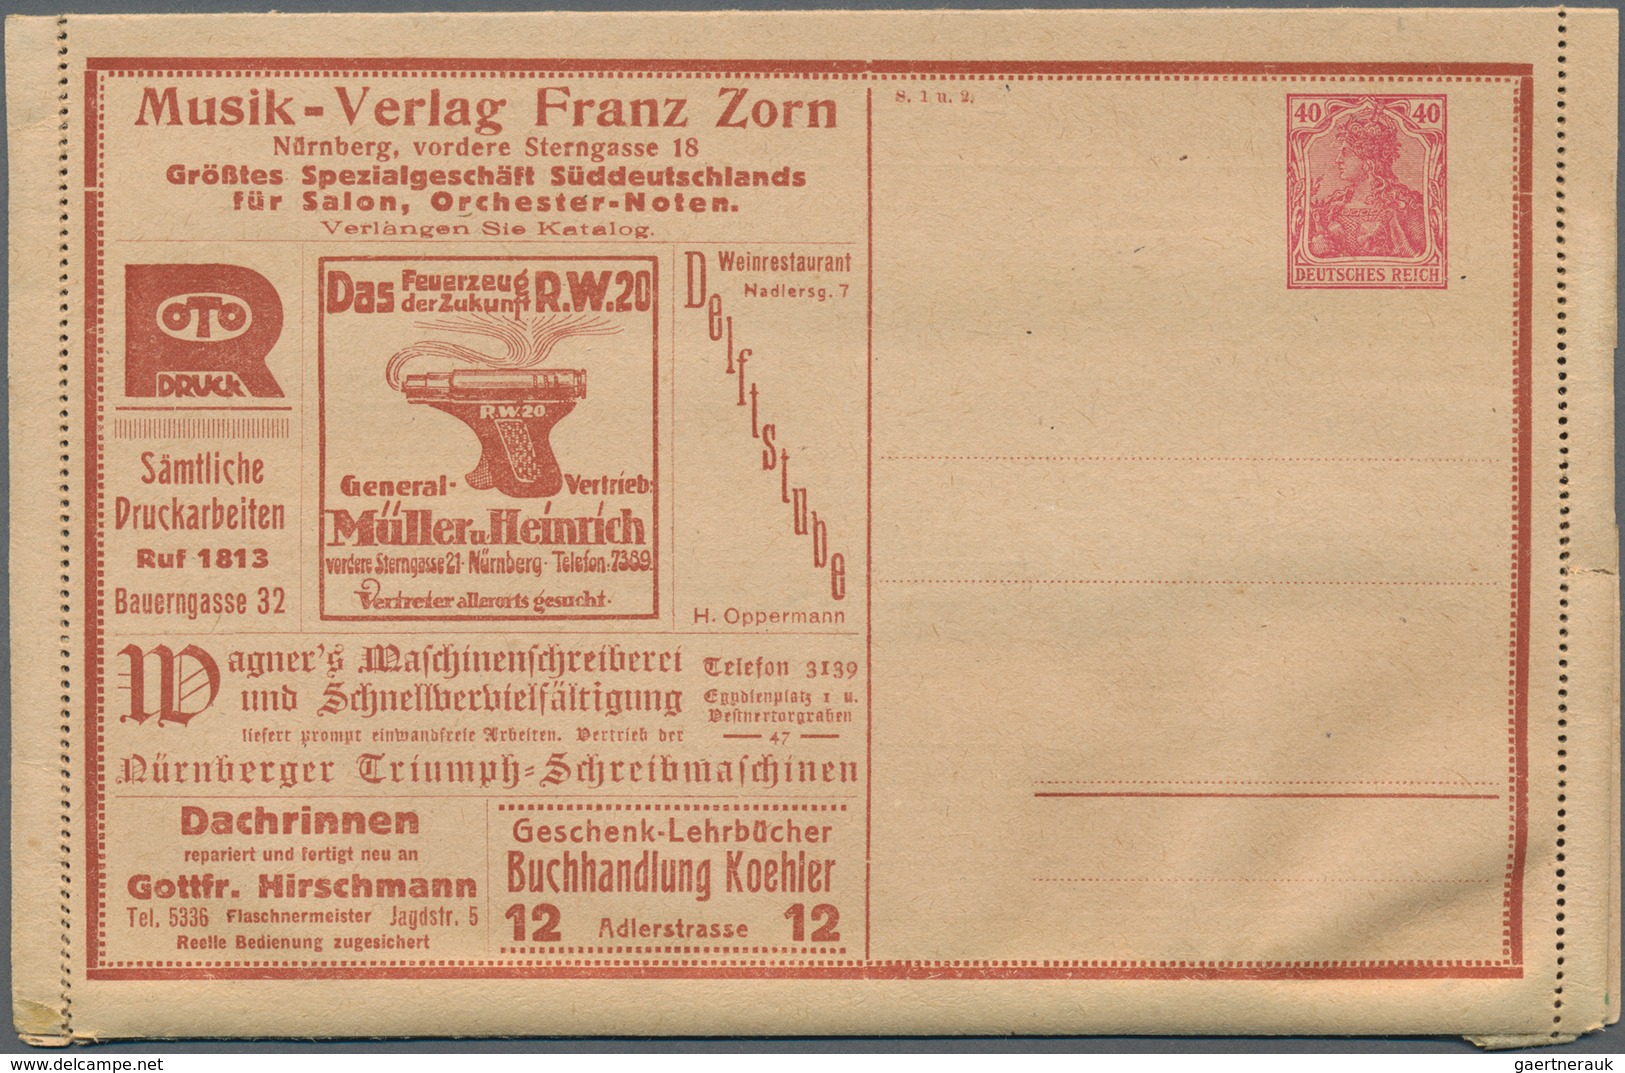 Deutsches Reich - Ganzsachen: 1872/1944, vielseitige Partie von ca. 170 gebrauchten und ungebrauchte